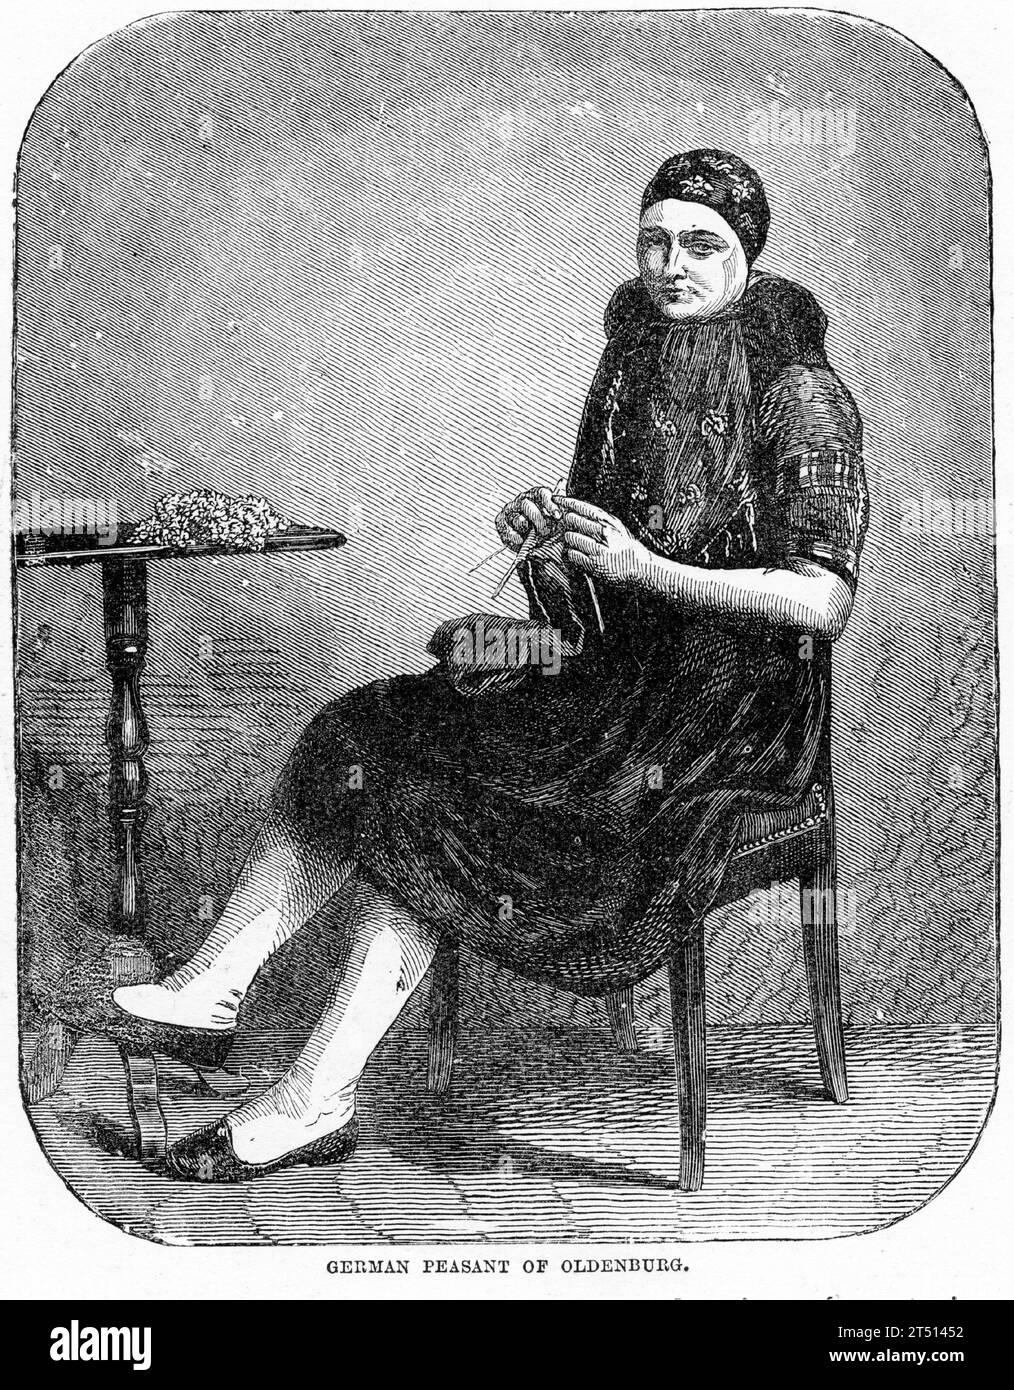 Ritratto inciso di una contadina tedesca di Oldenburg che lavora a maglia su una sedia. Pubblicato intorno al 1887 Foto Stock